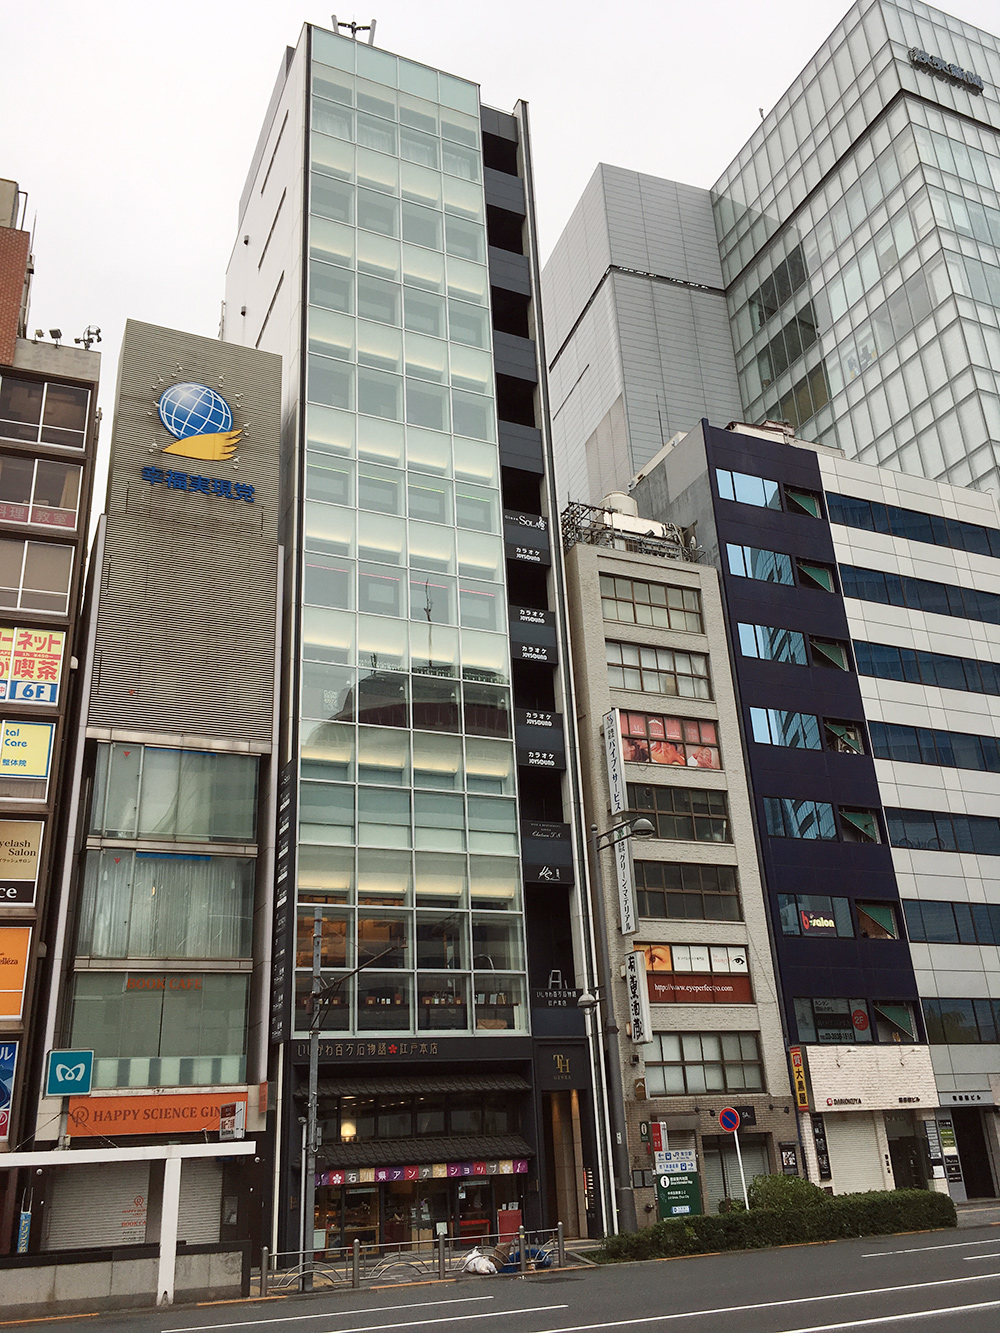 Из-за высокой стоимости земли в центре Токио дома там узкие и высокие. Но даже так площади в них доступны лишь для коммерческого использования